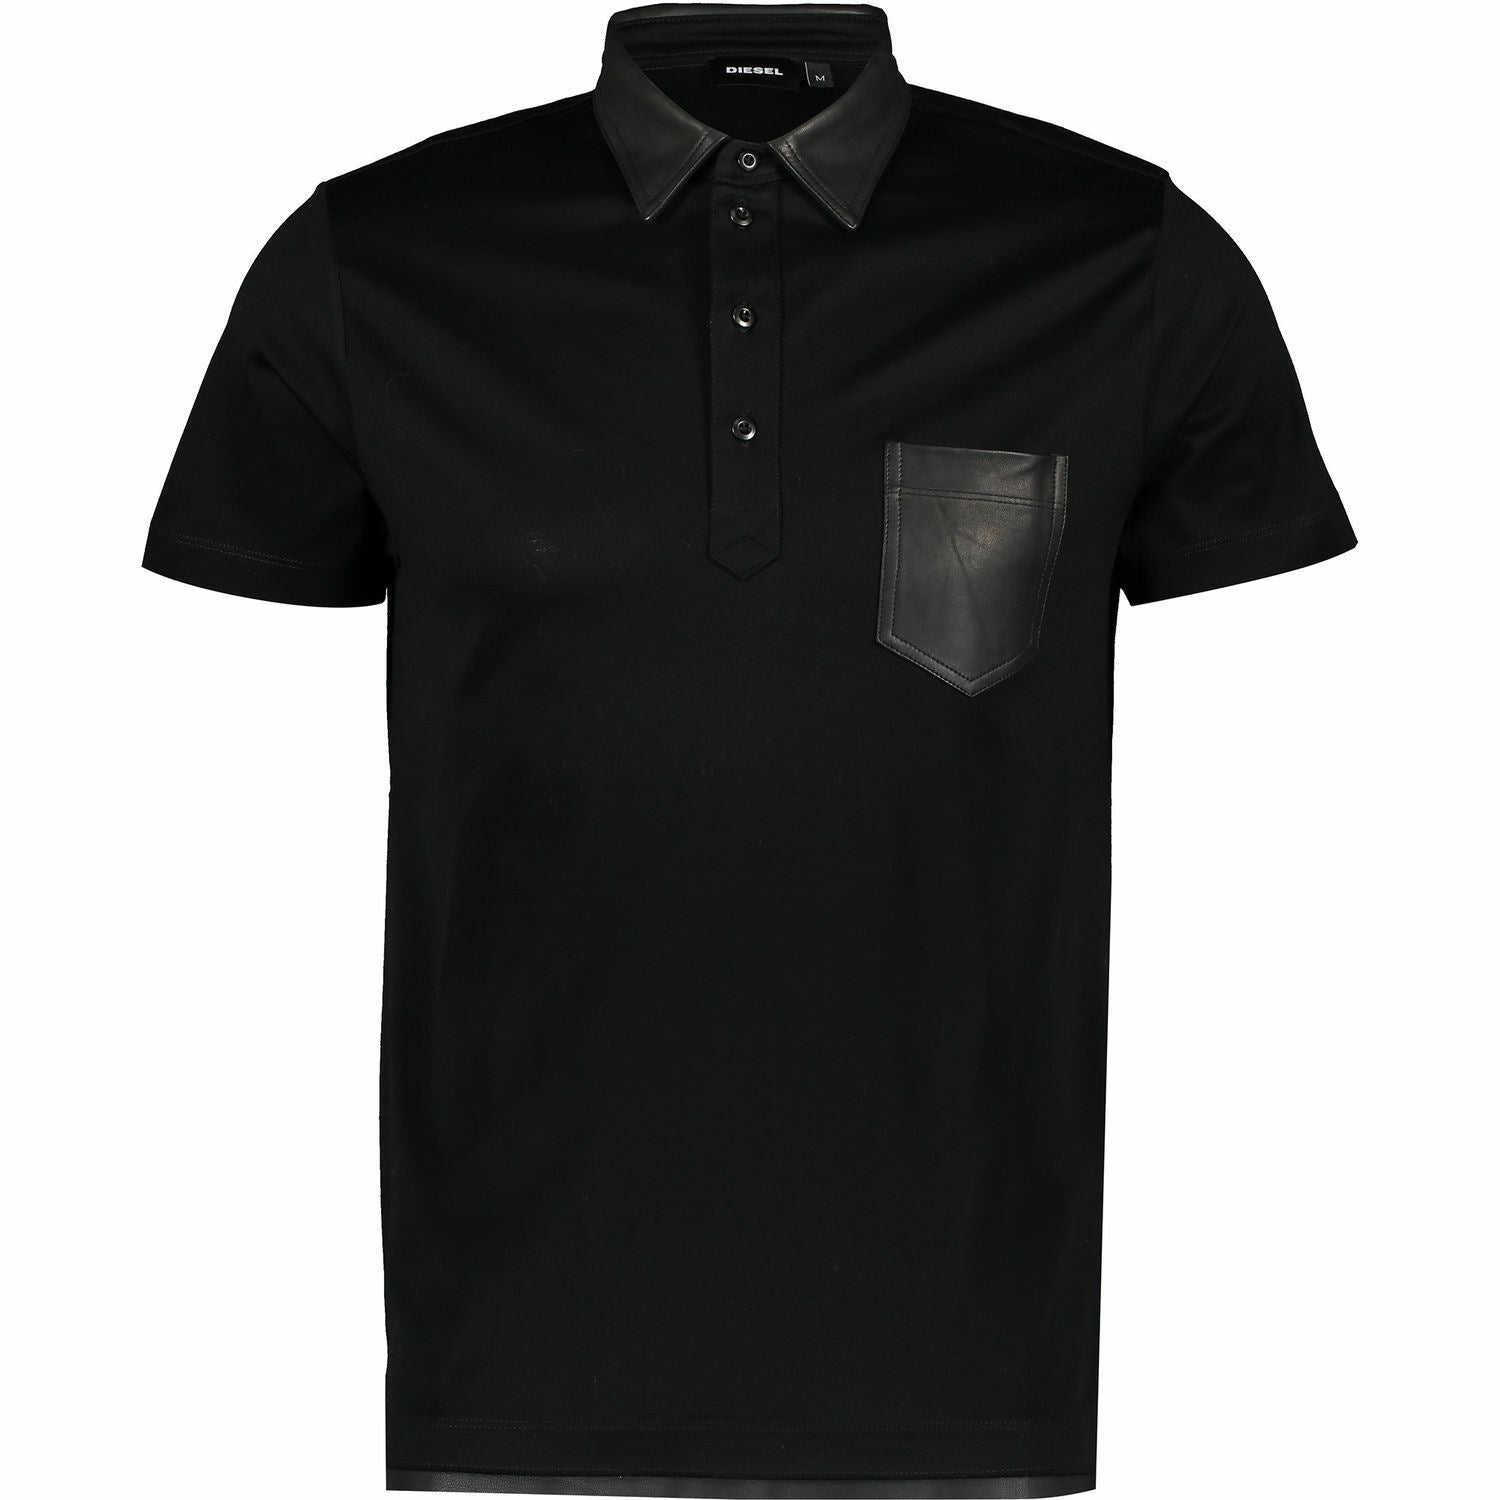 DIESEL Men's Black Leather Trim Polo Shirt, size S Size M Size L